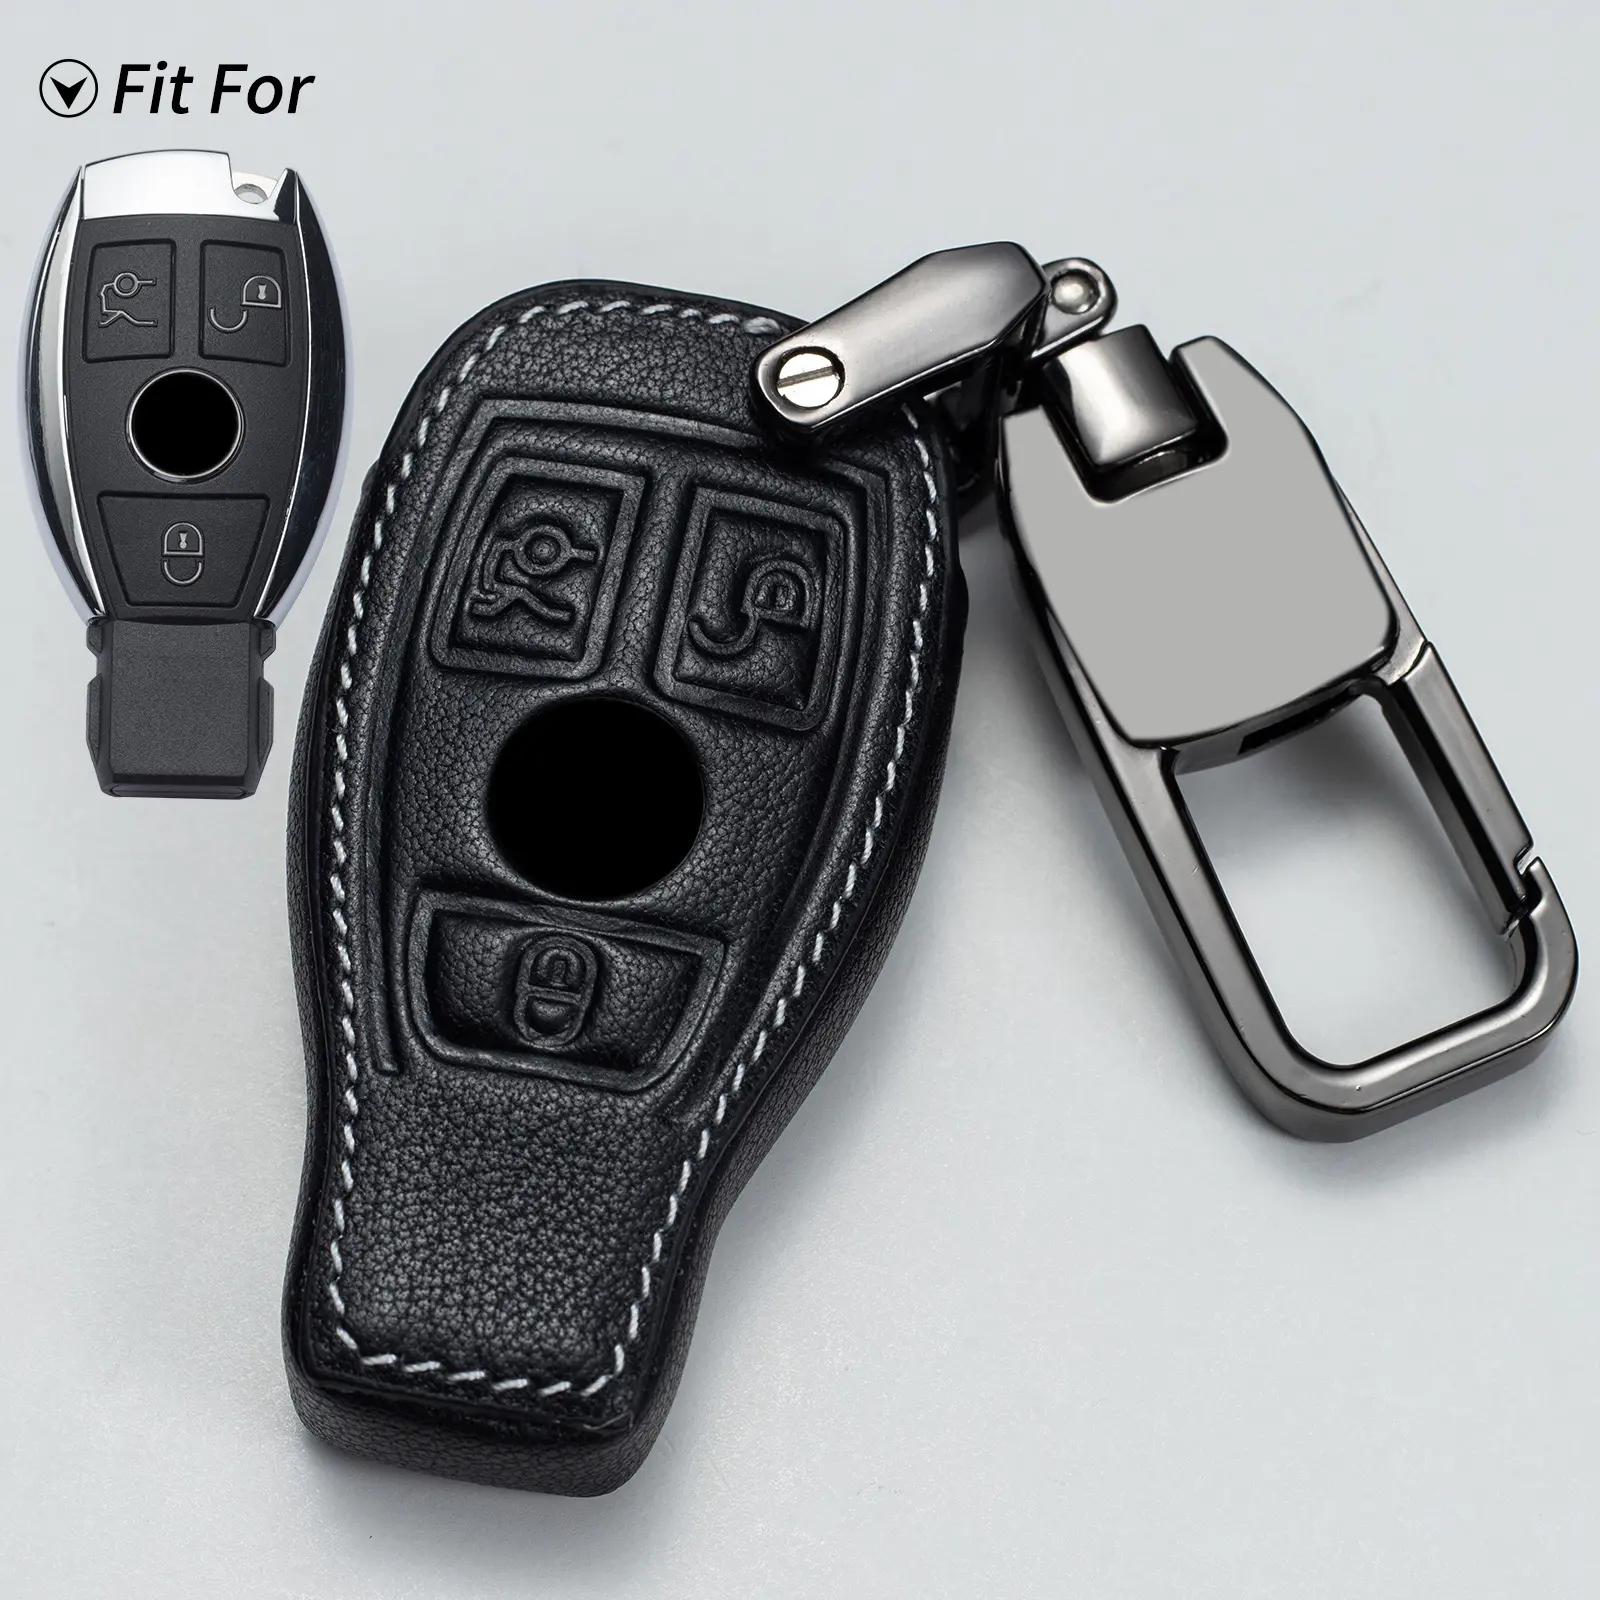 Capa protetora de couro genuíno para chave de carro, acessório com controle remoto inteligente para Mazda Infiniti Maserati